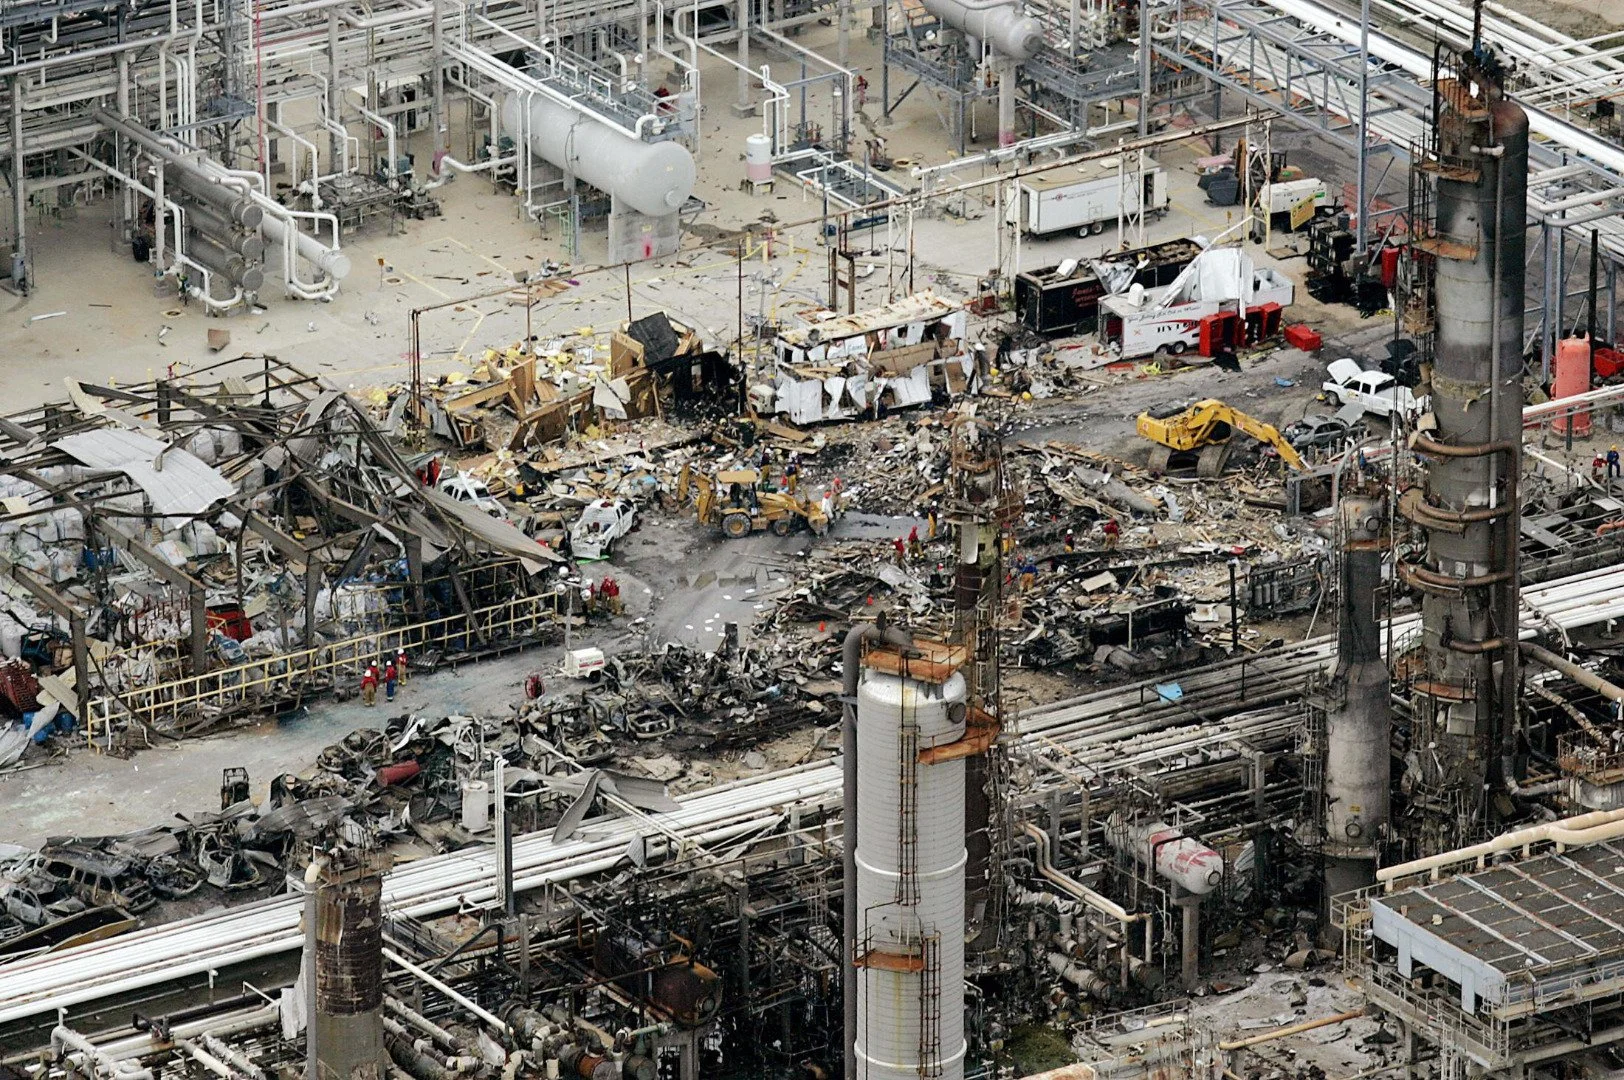 В октябре 1989 года на химическом заводе компании Phillips Petroleum Company в городе Пасадена, штат Техас, сначала произошла утечка газа, а потом он взорвался. Силу взрыва сравнивают с 2,5 тоннами динамита. Тушение огромного пожара, который начался после взрыва, заняло 10 часов. Погибло 23 человека, ранено — 314 человек.